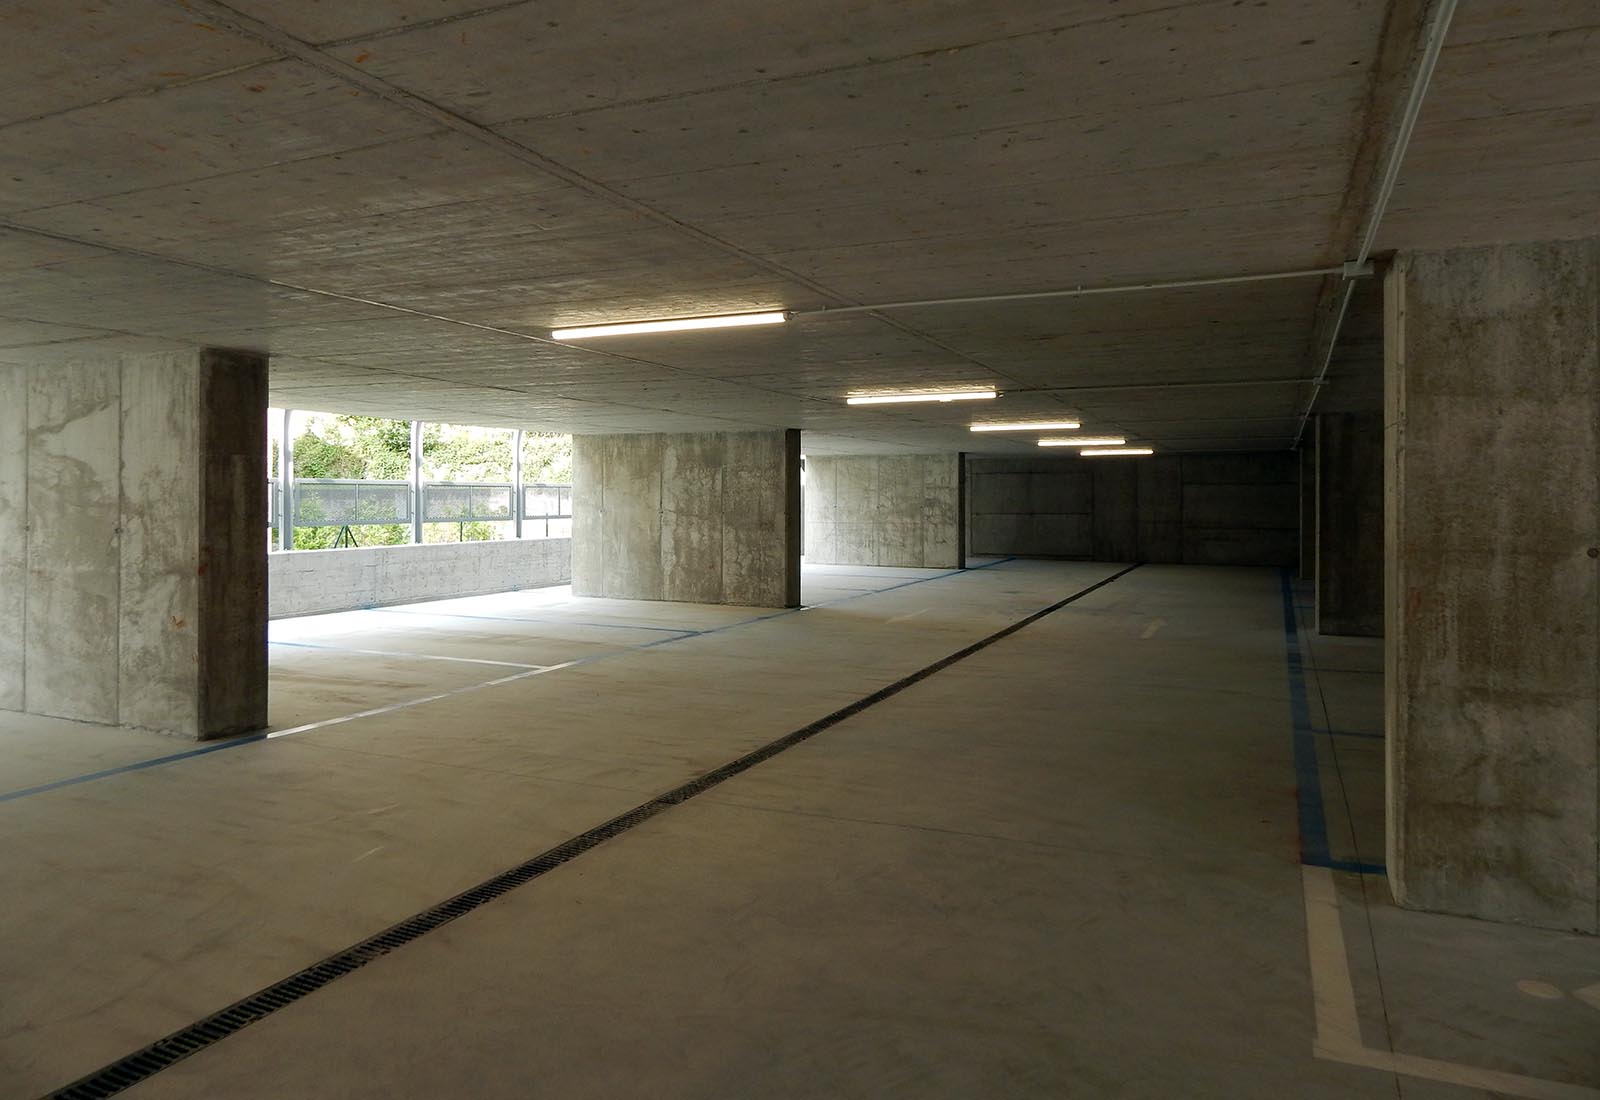 Public underground garage in Gravedona - Intermediate parking area